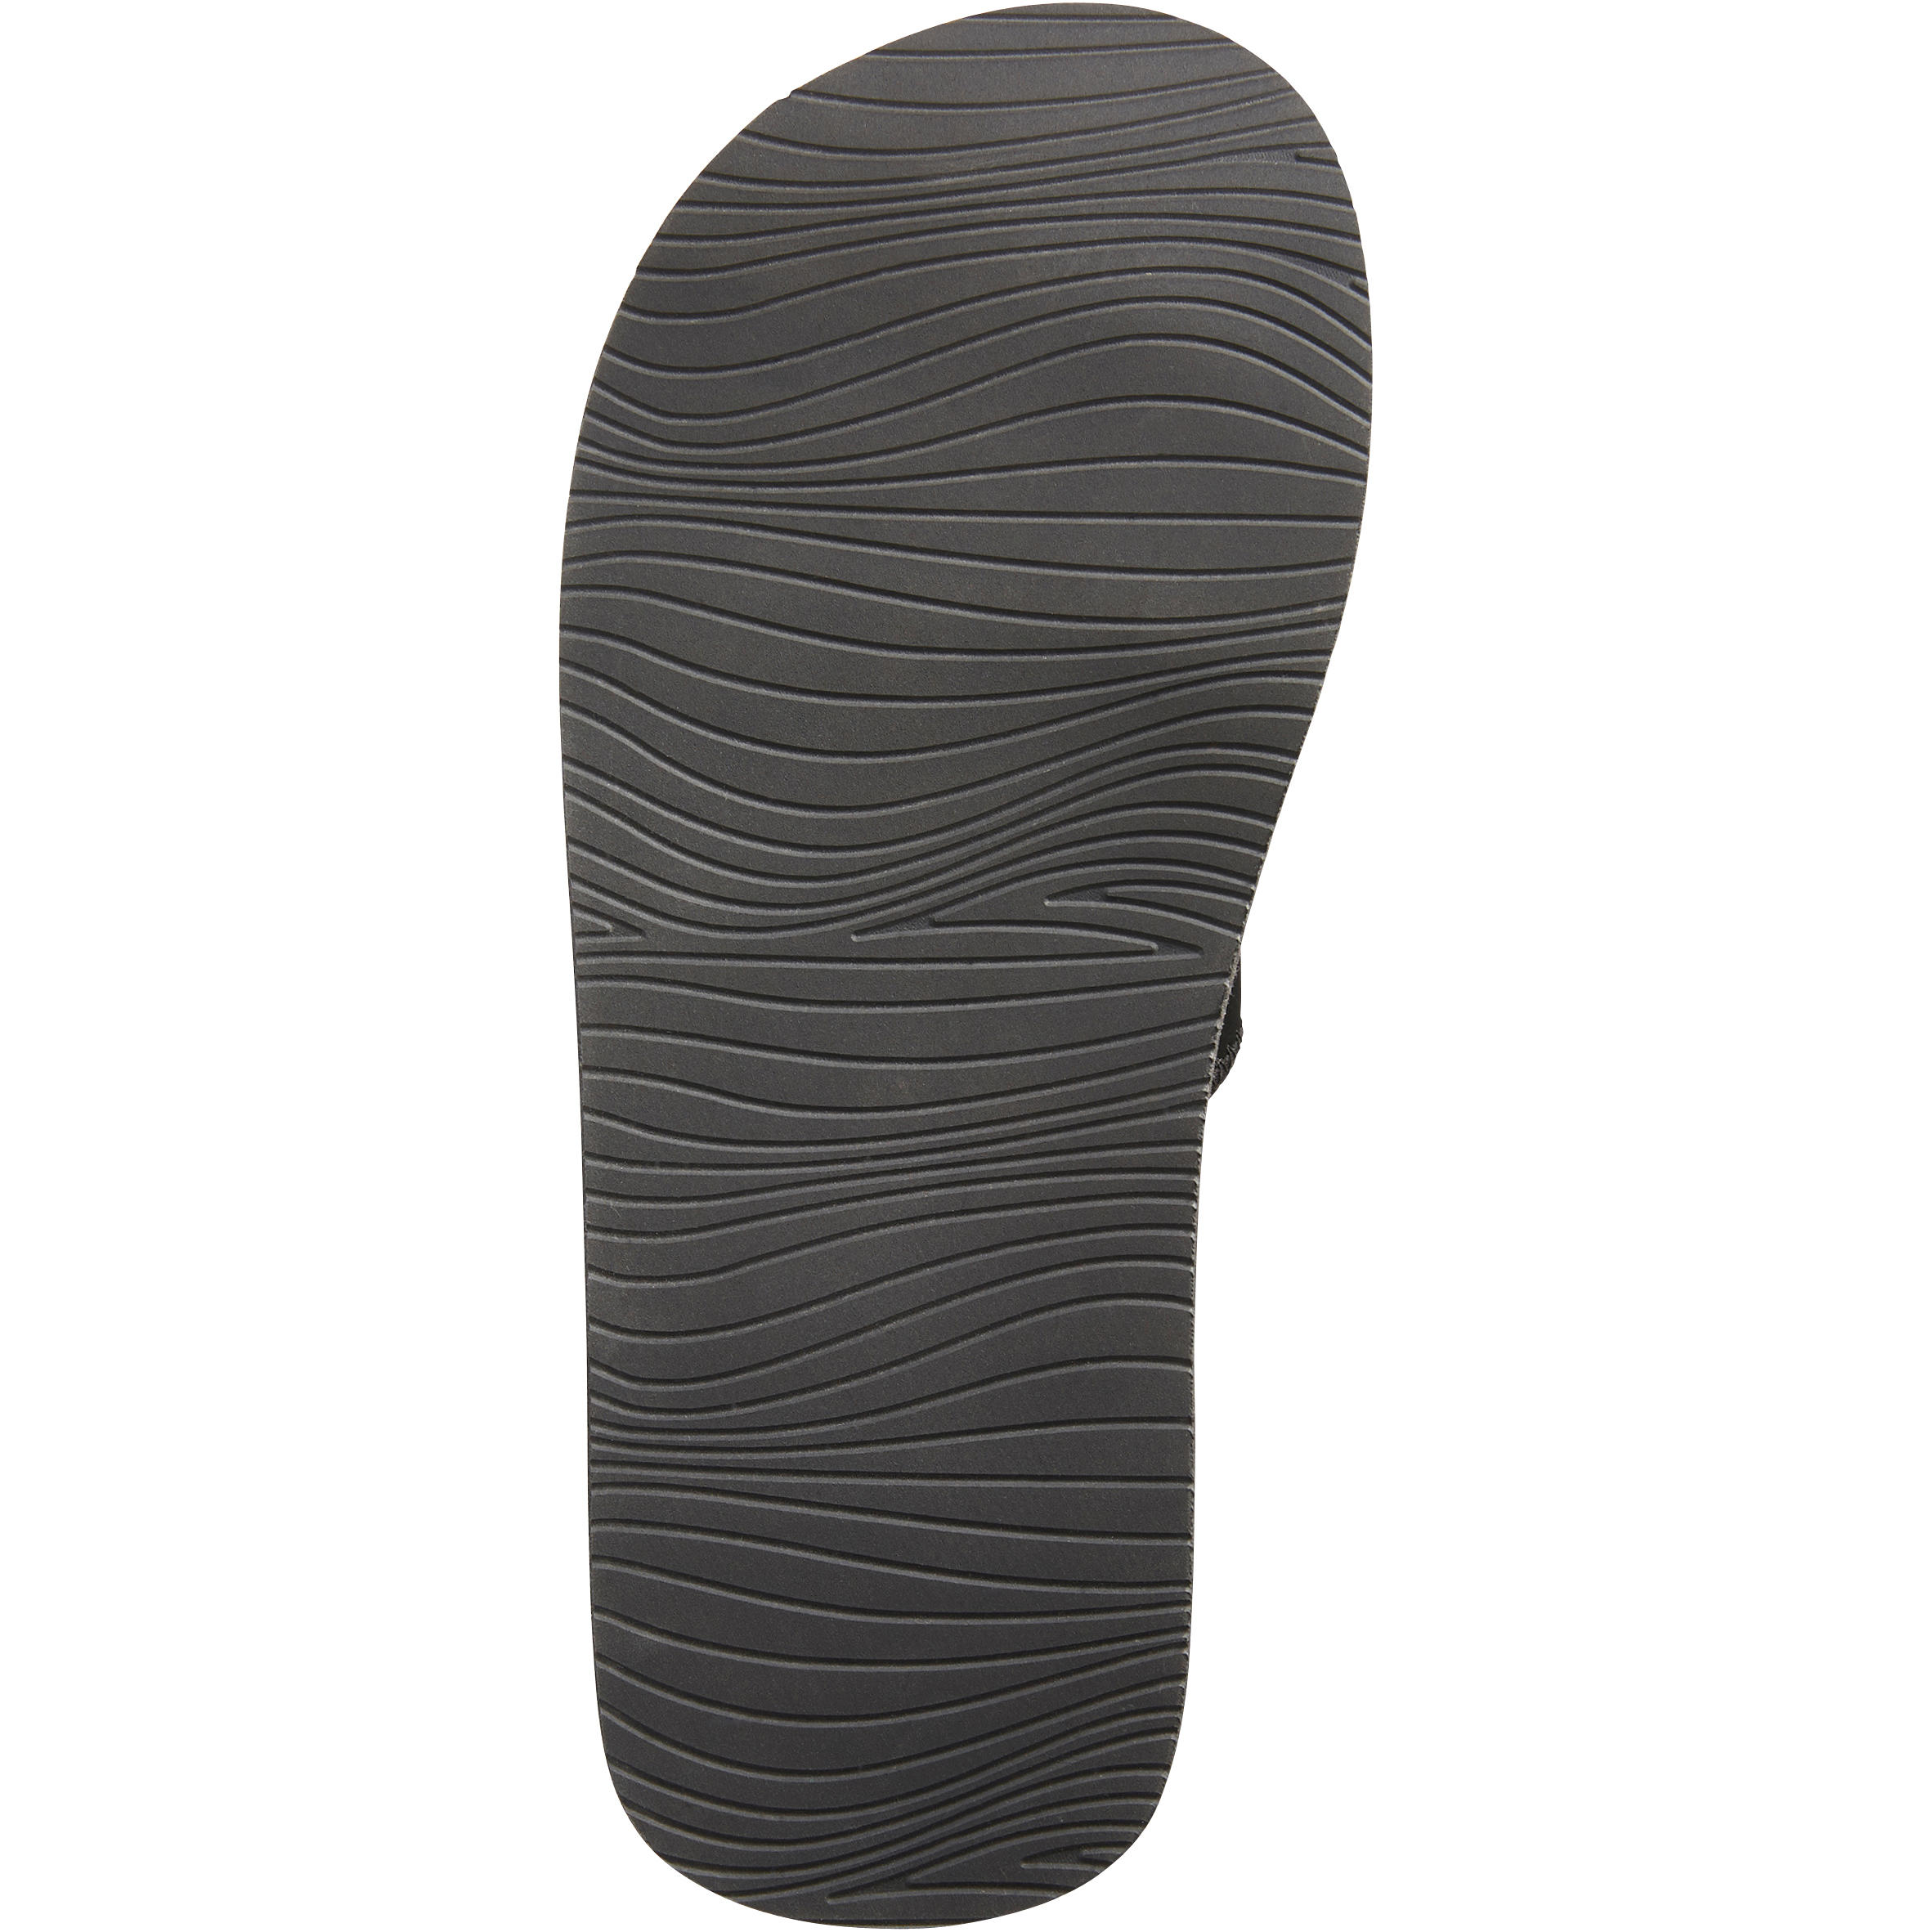 Men's Slide Sandals - 590 - OLAIAN